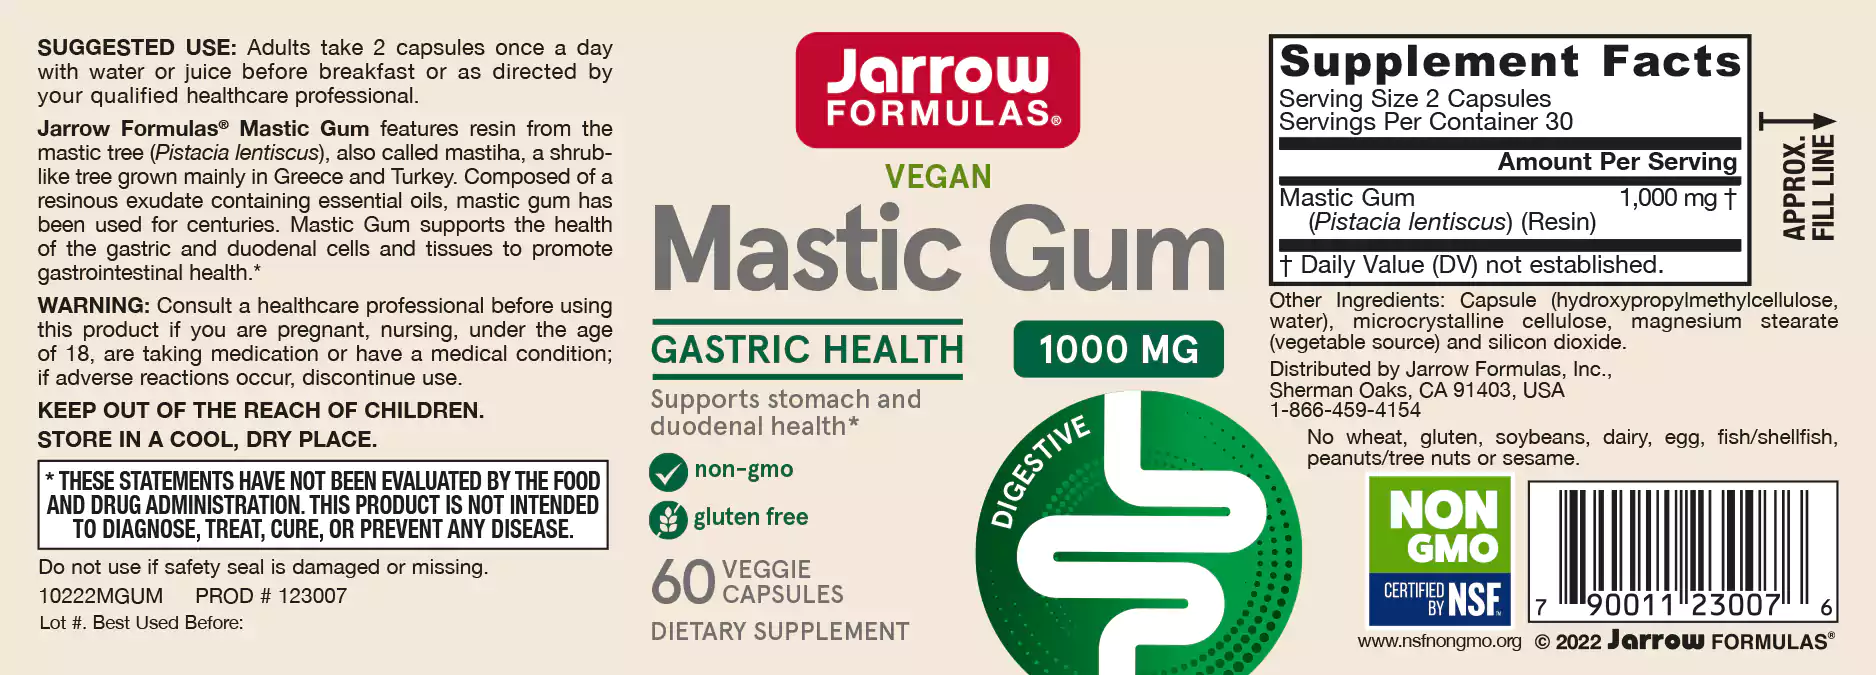 Amazing Formulas Mastic Gum, 1000 Mg